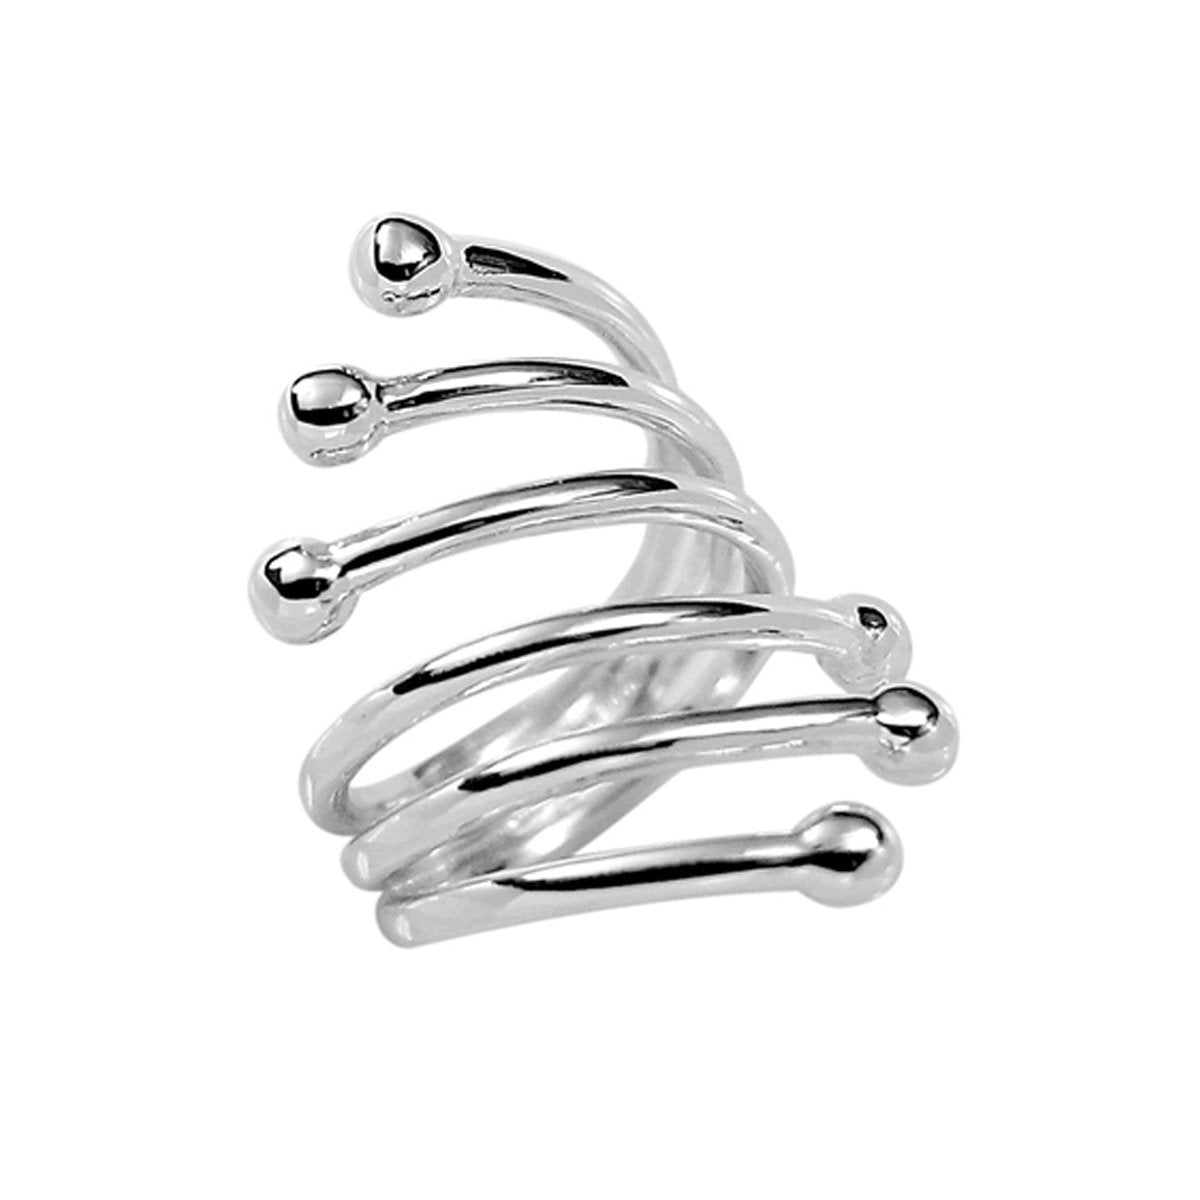 6 Row Modern Twist Wrap Silver Fashion Ring